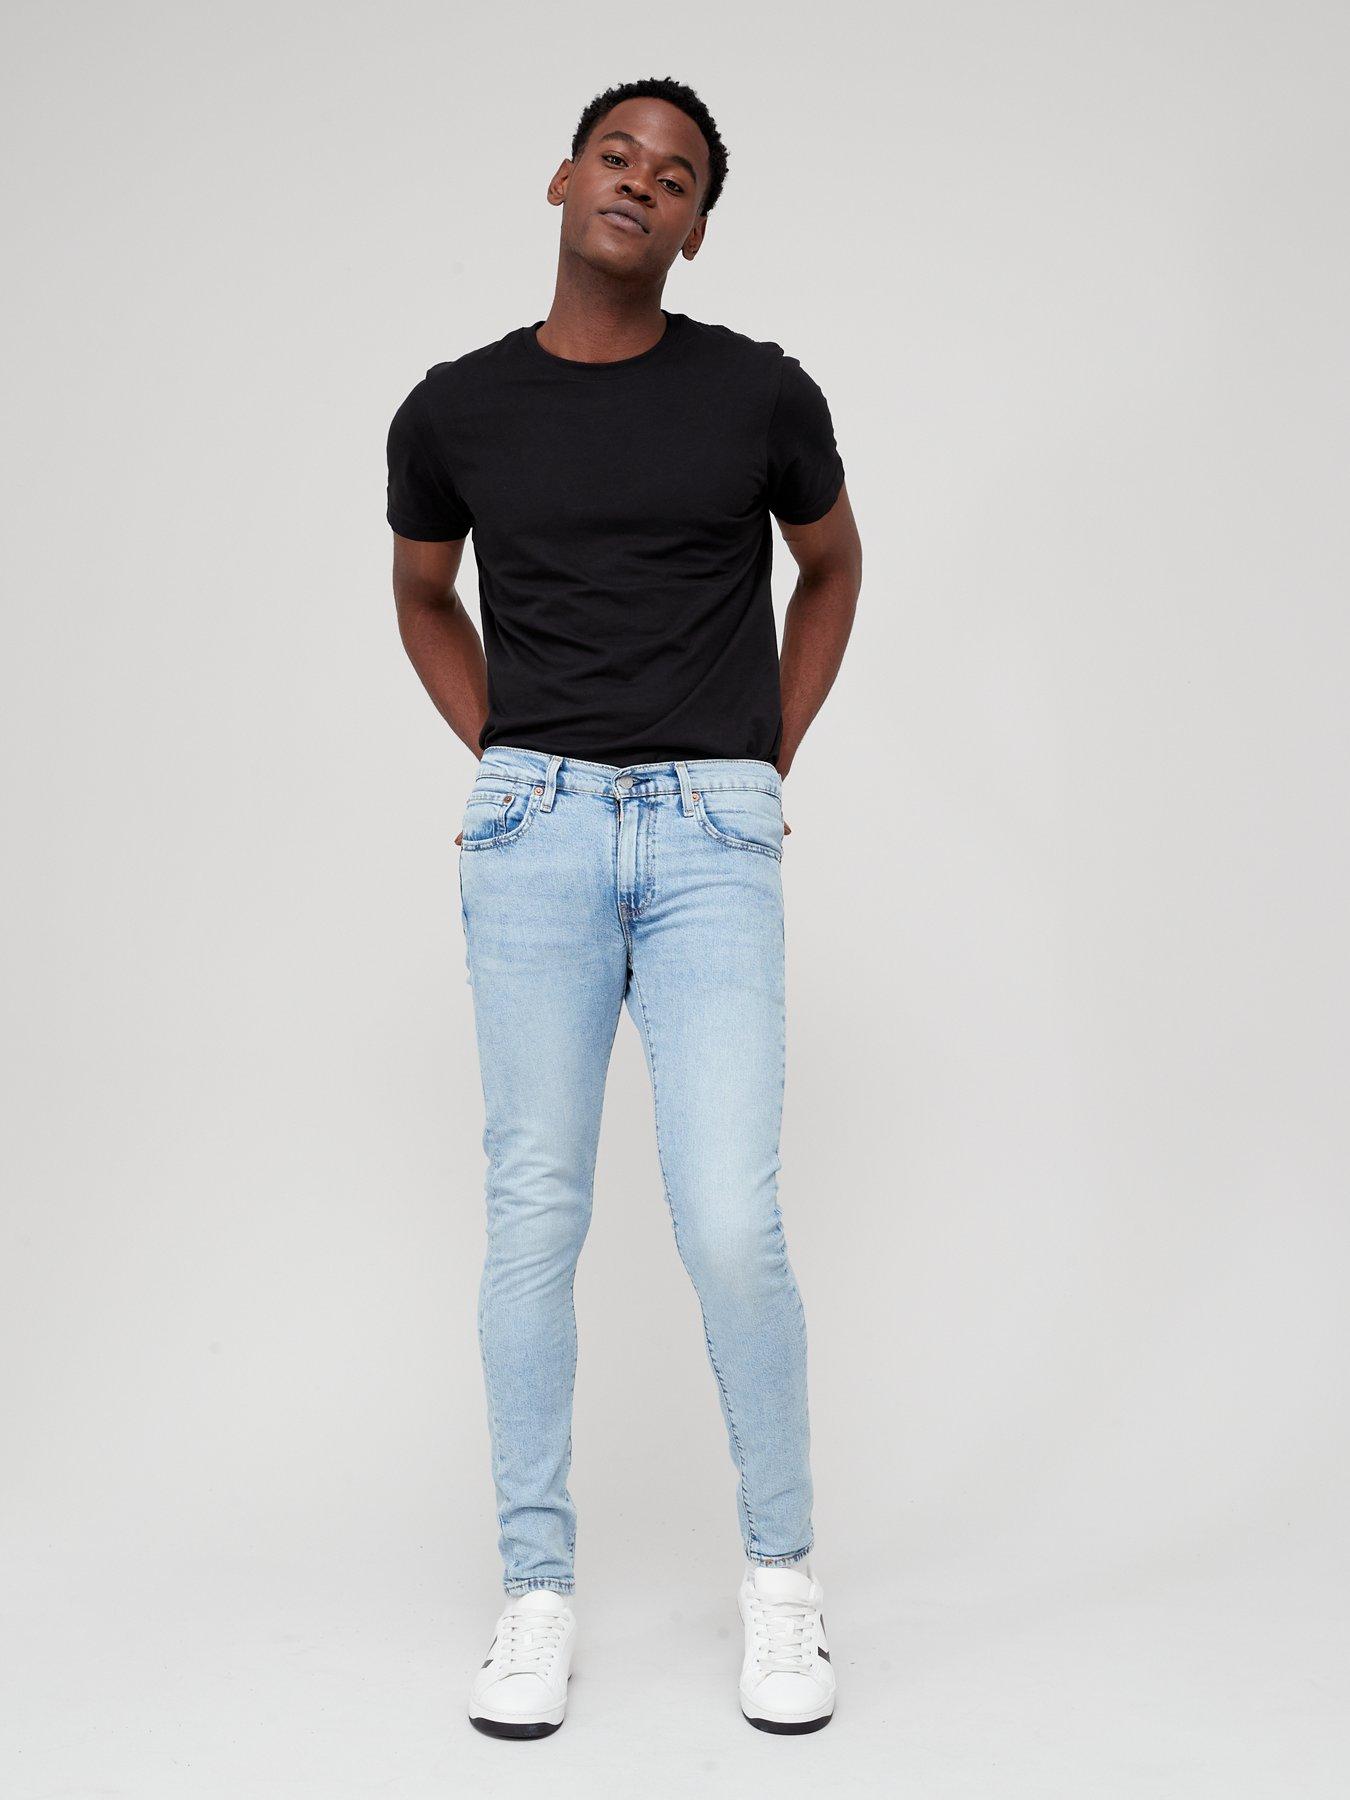 Levi's Skinny Taper Fit Jeans - Medium Indigo 